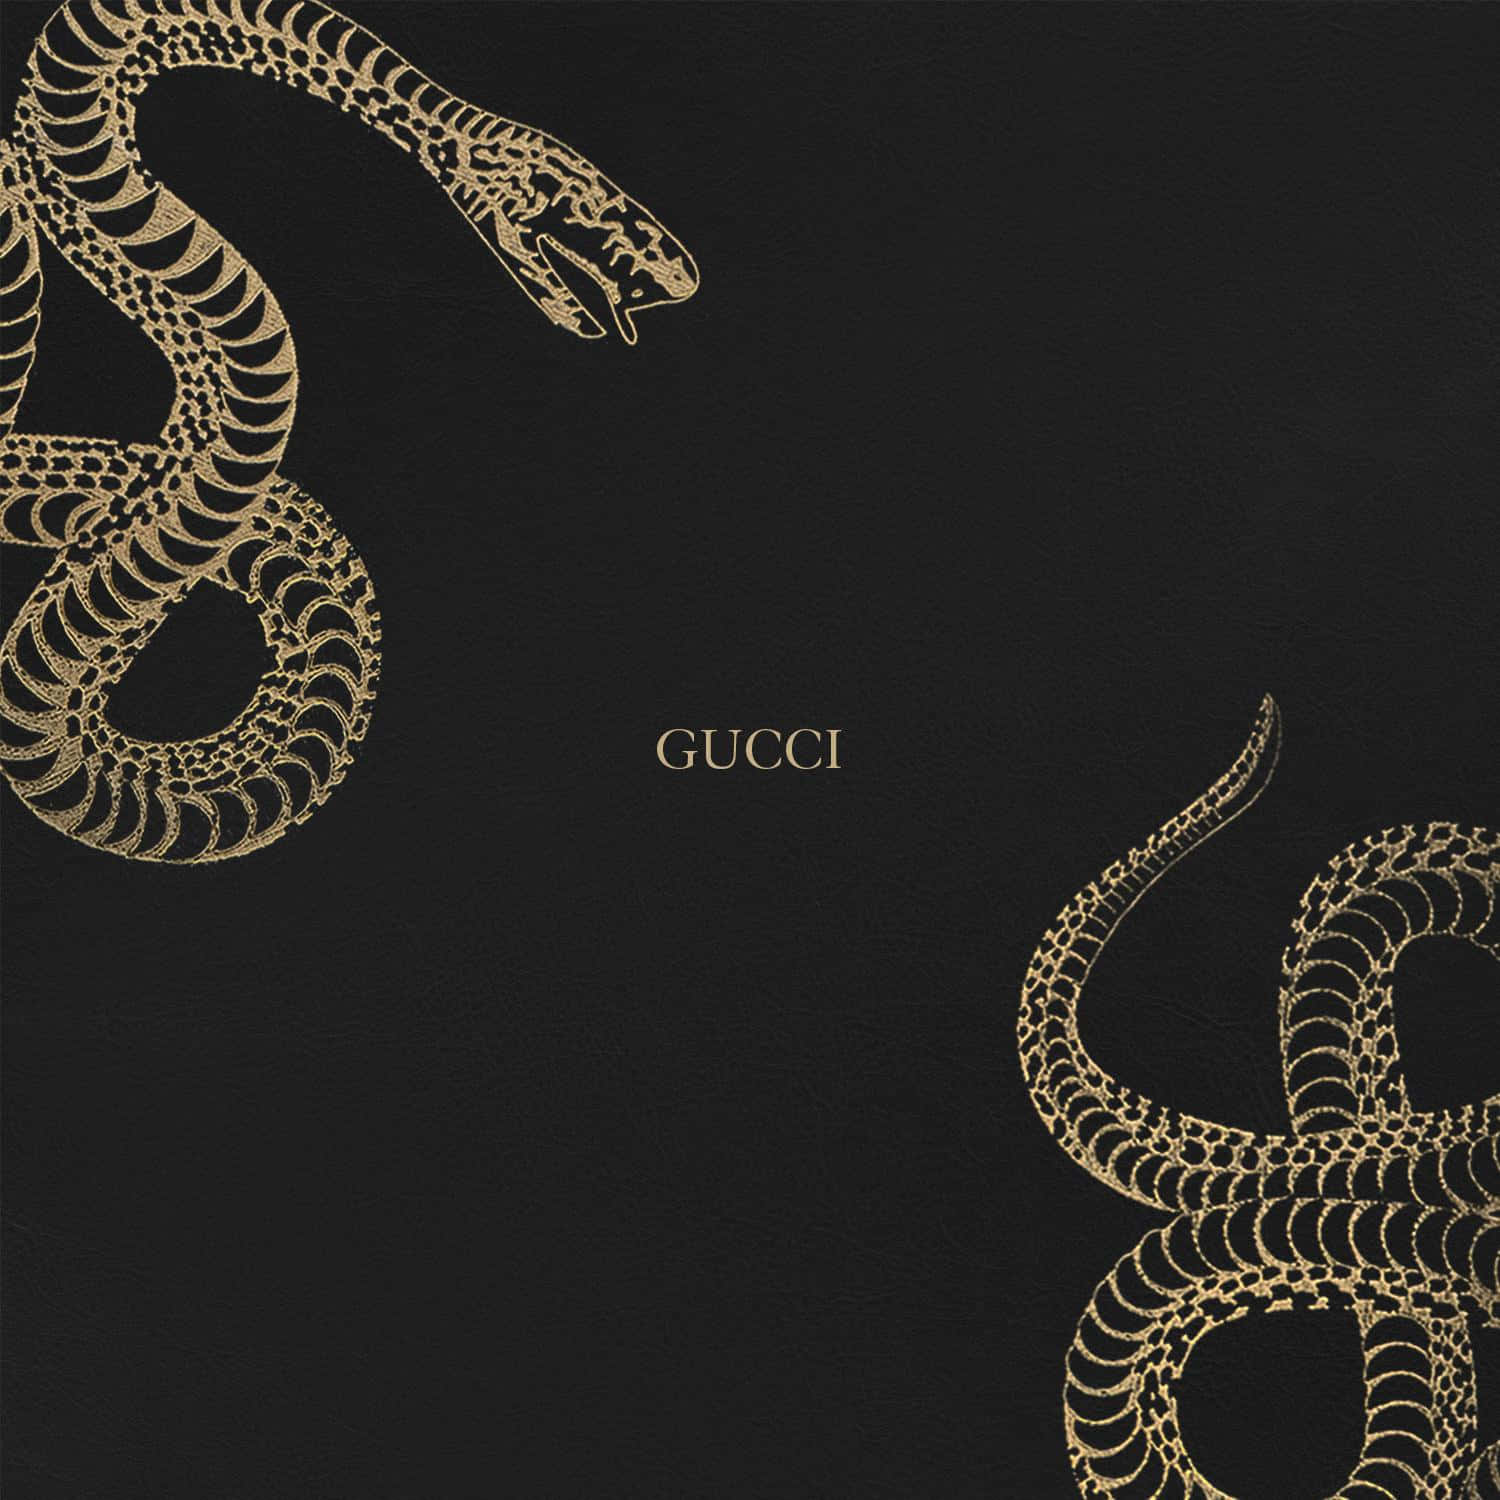 Impresionanteestampado De Serpiente En Fondo De Texto De Gucci